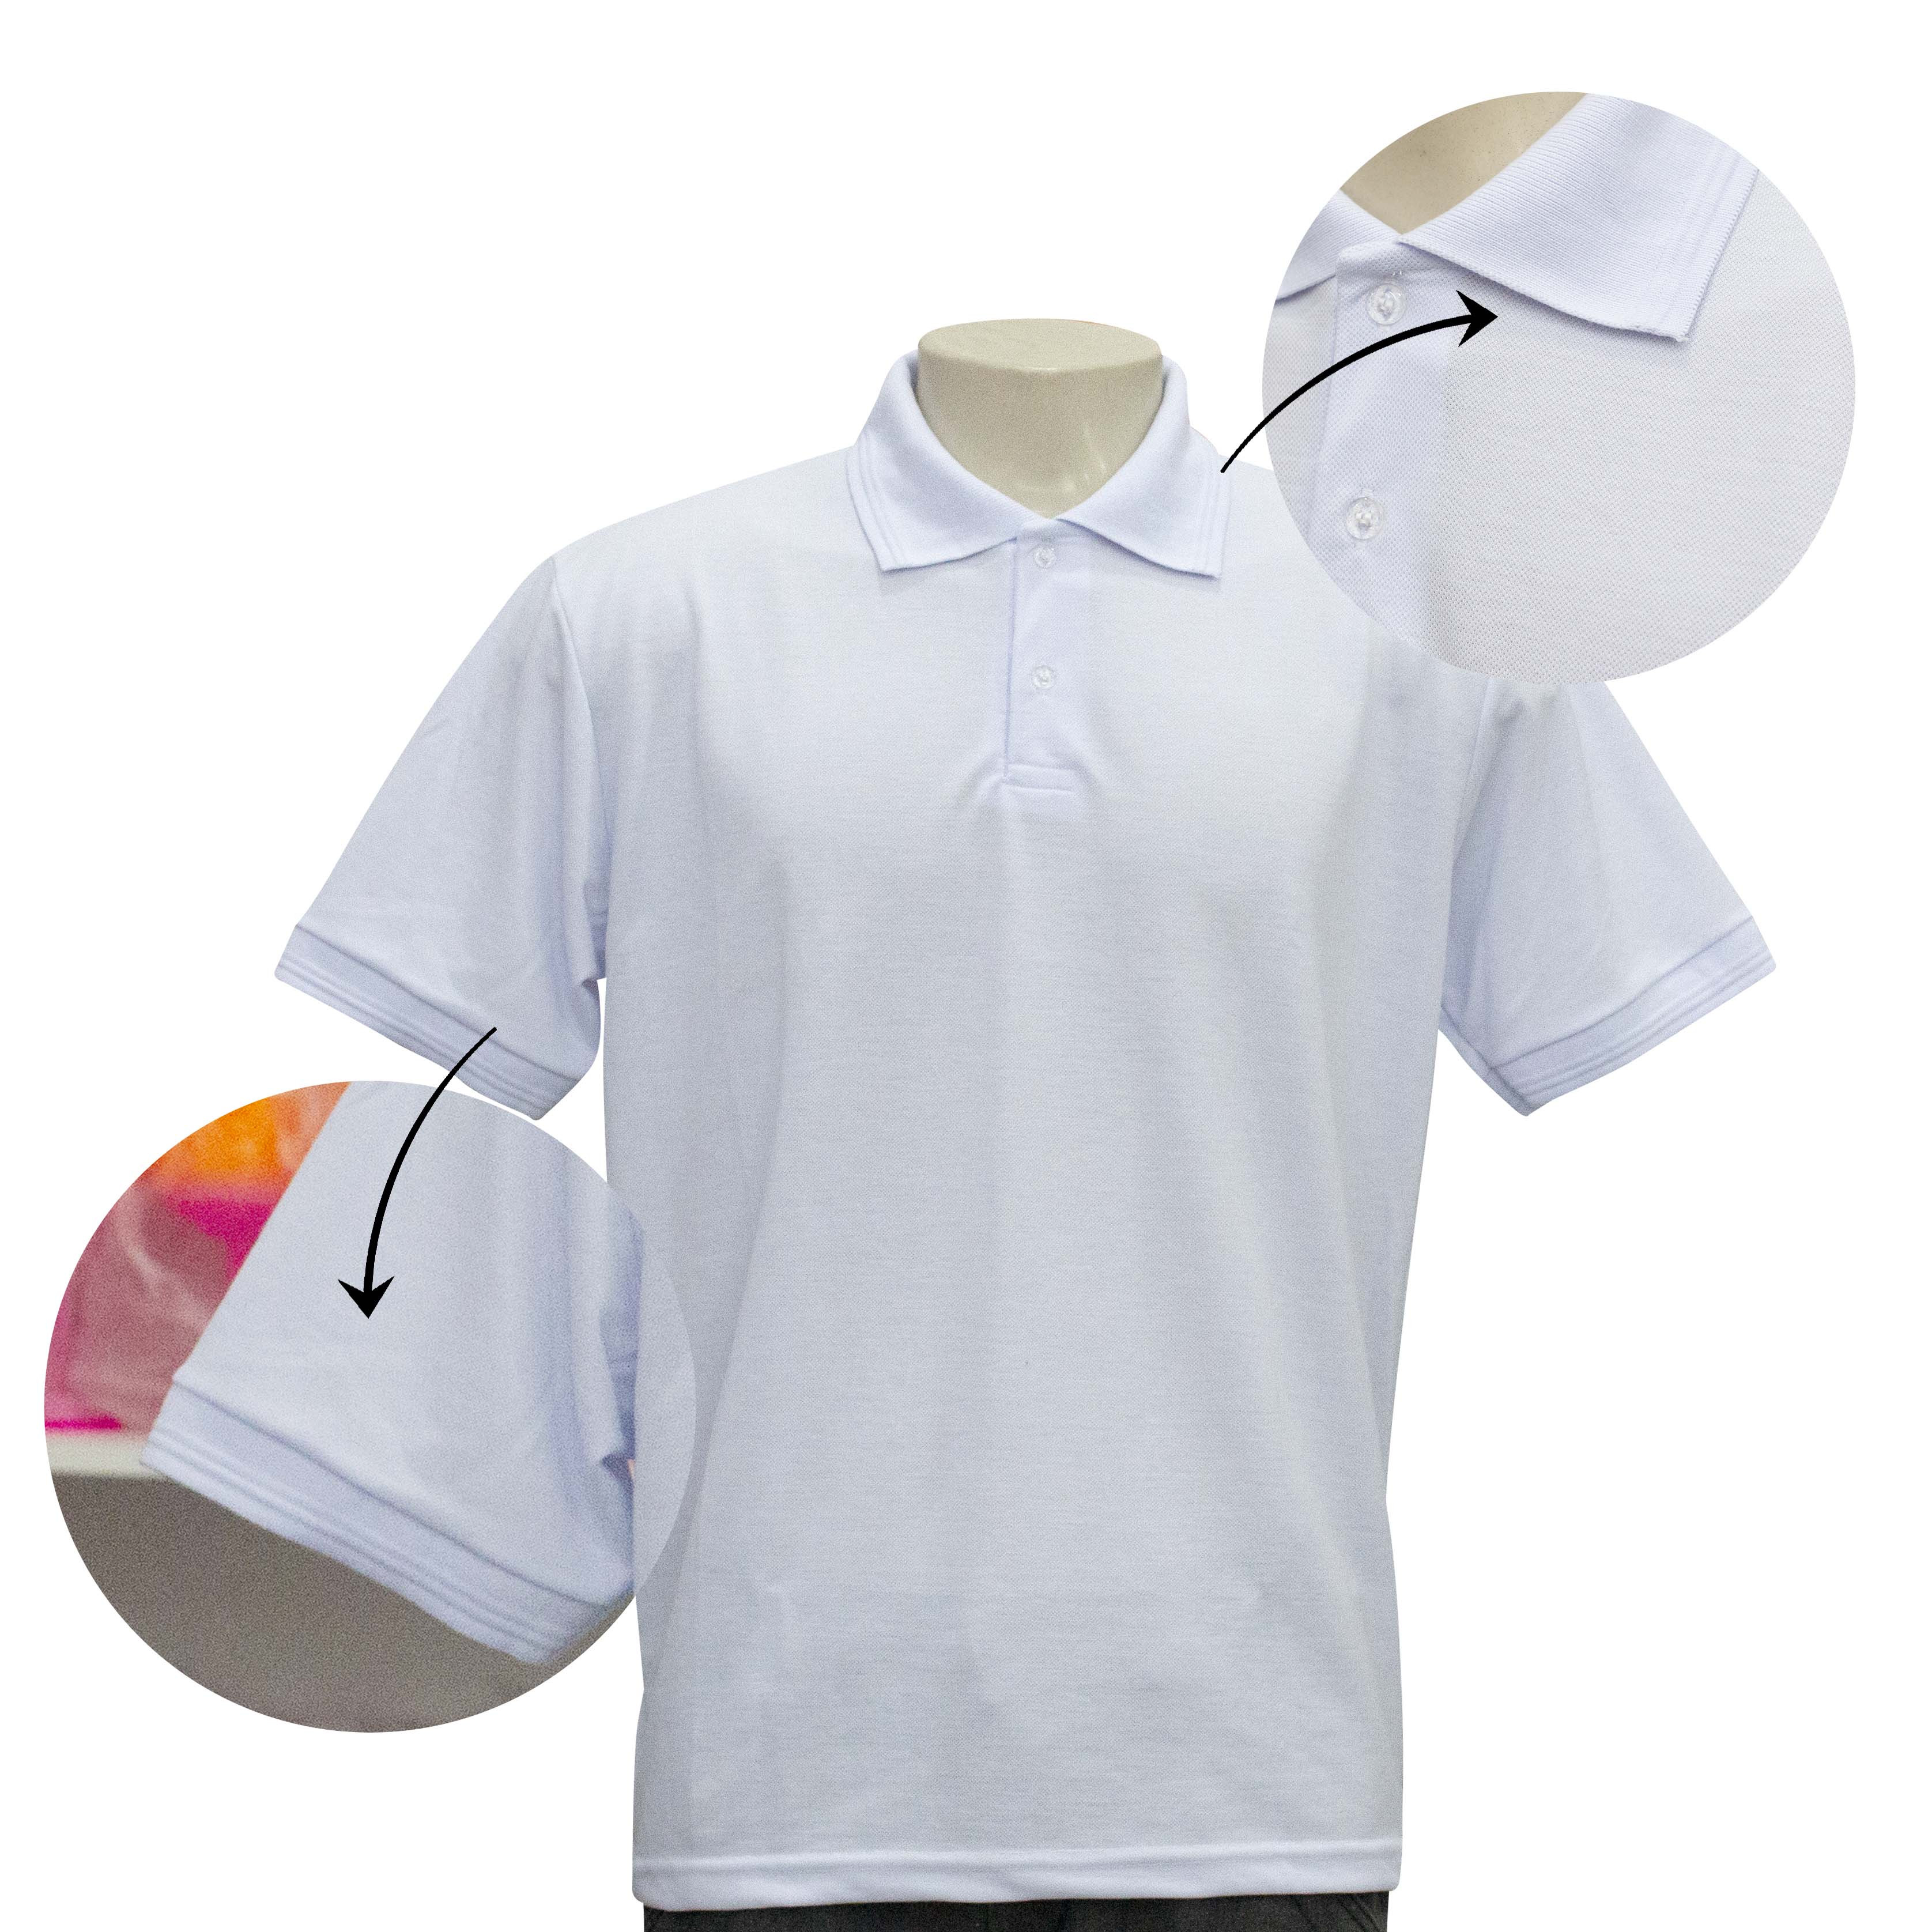 Camisa Brasil Polo - Branco